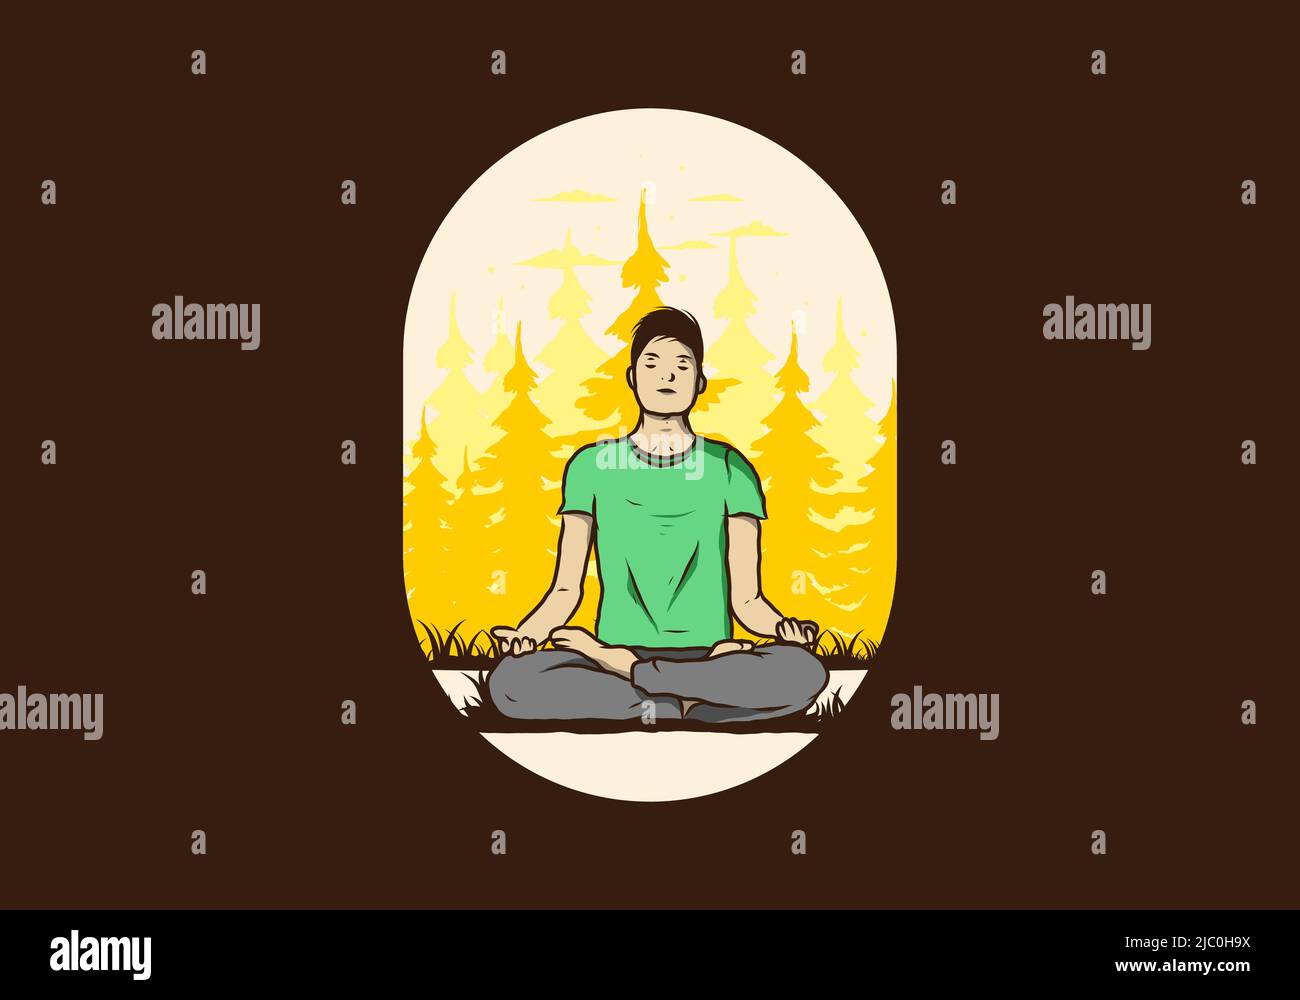 Disegno colorato di illustrazione di una persona che fa yoga e meditating all'aperto in una foresta nella natura fra gli alberi di pino Illustrazione Vettoriale